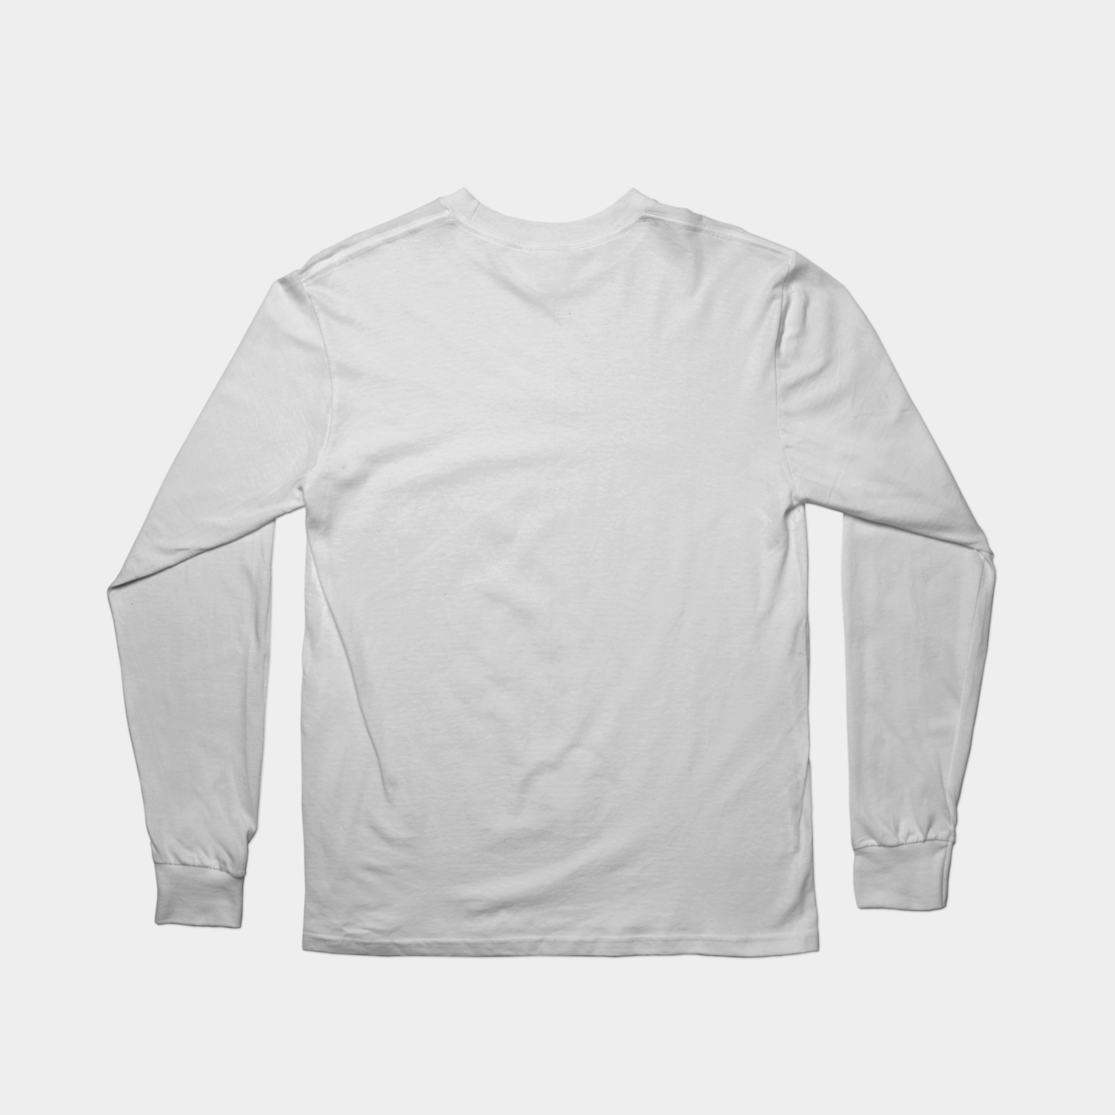 Sweatshirt clipart woolen sweater. The loyalist an end